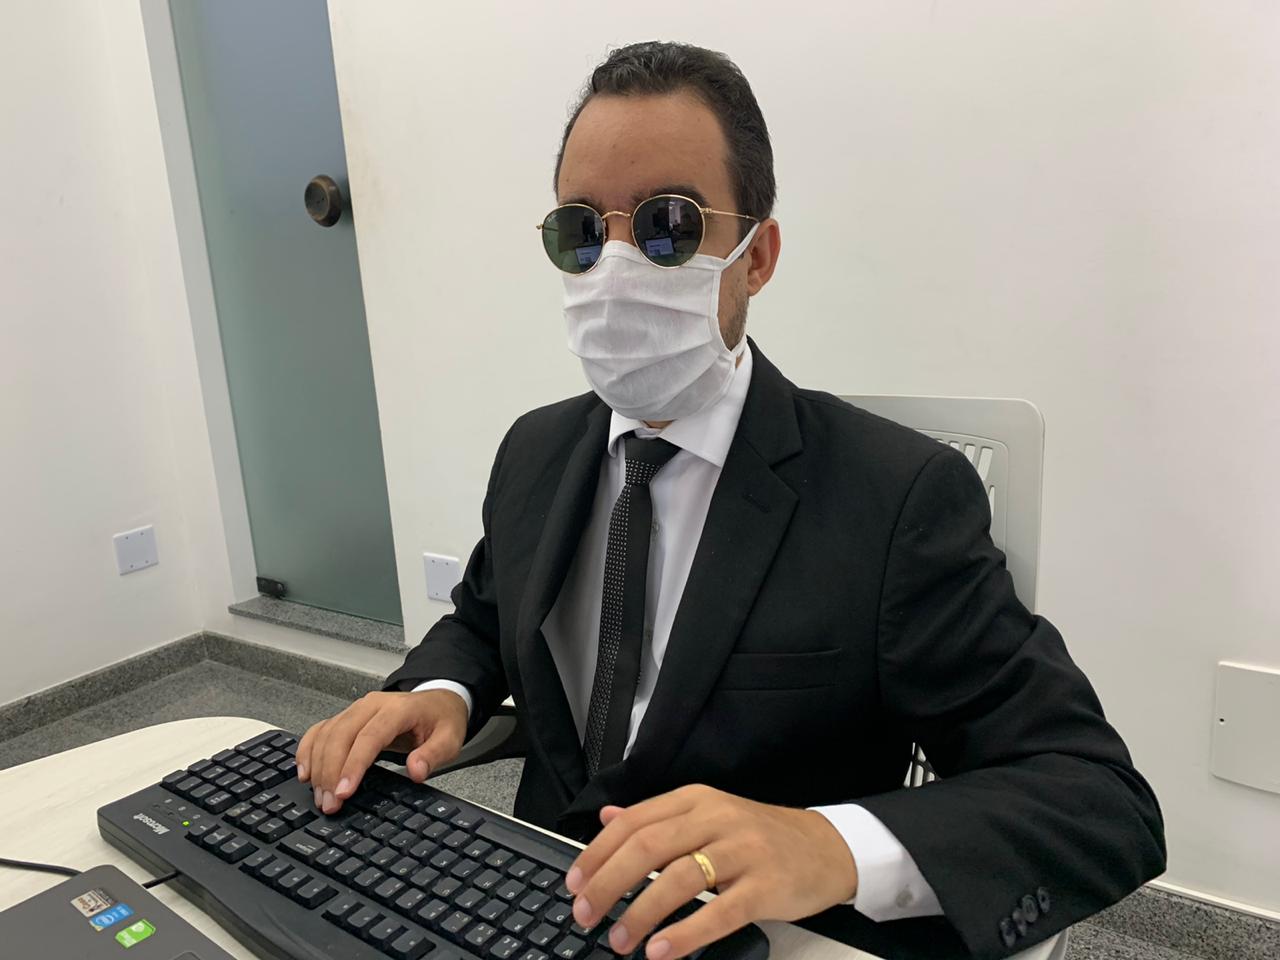 #PraTodoMundoVer Fotografia de Lucas Aribé. Ele usa terno preto, óculos escuros e uma máscara de proteção facial.